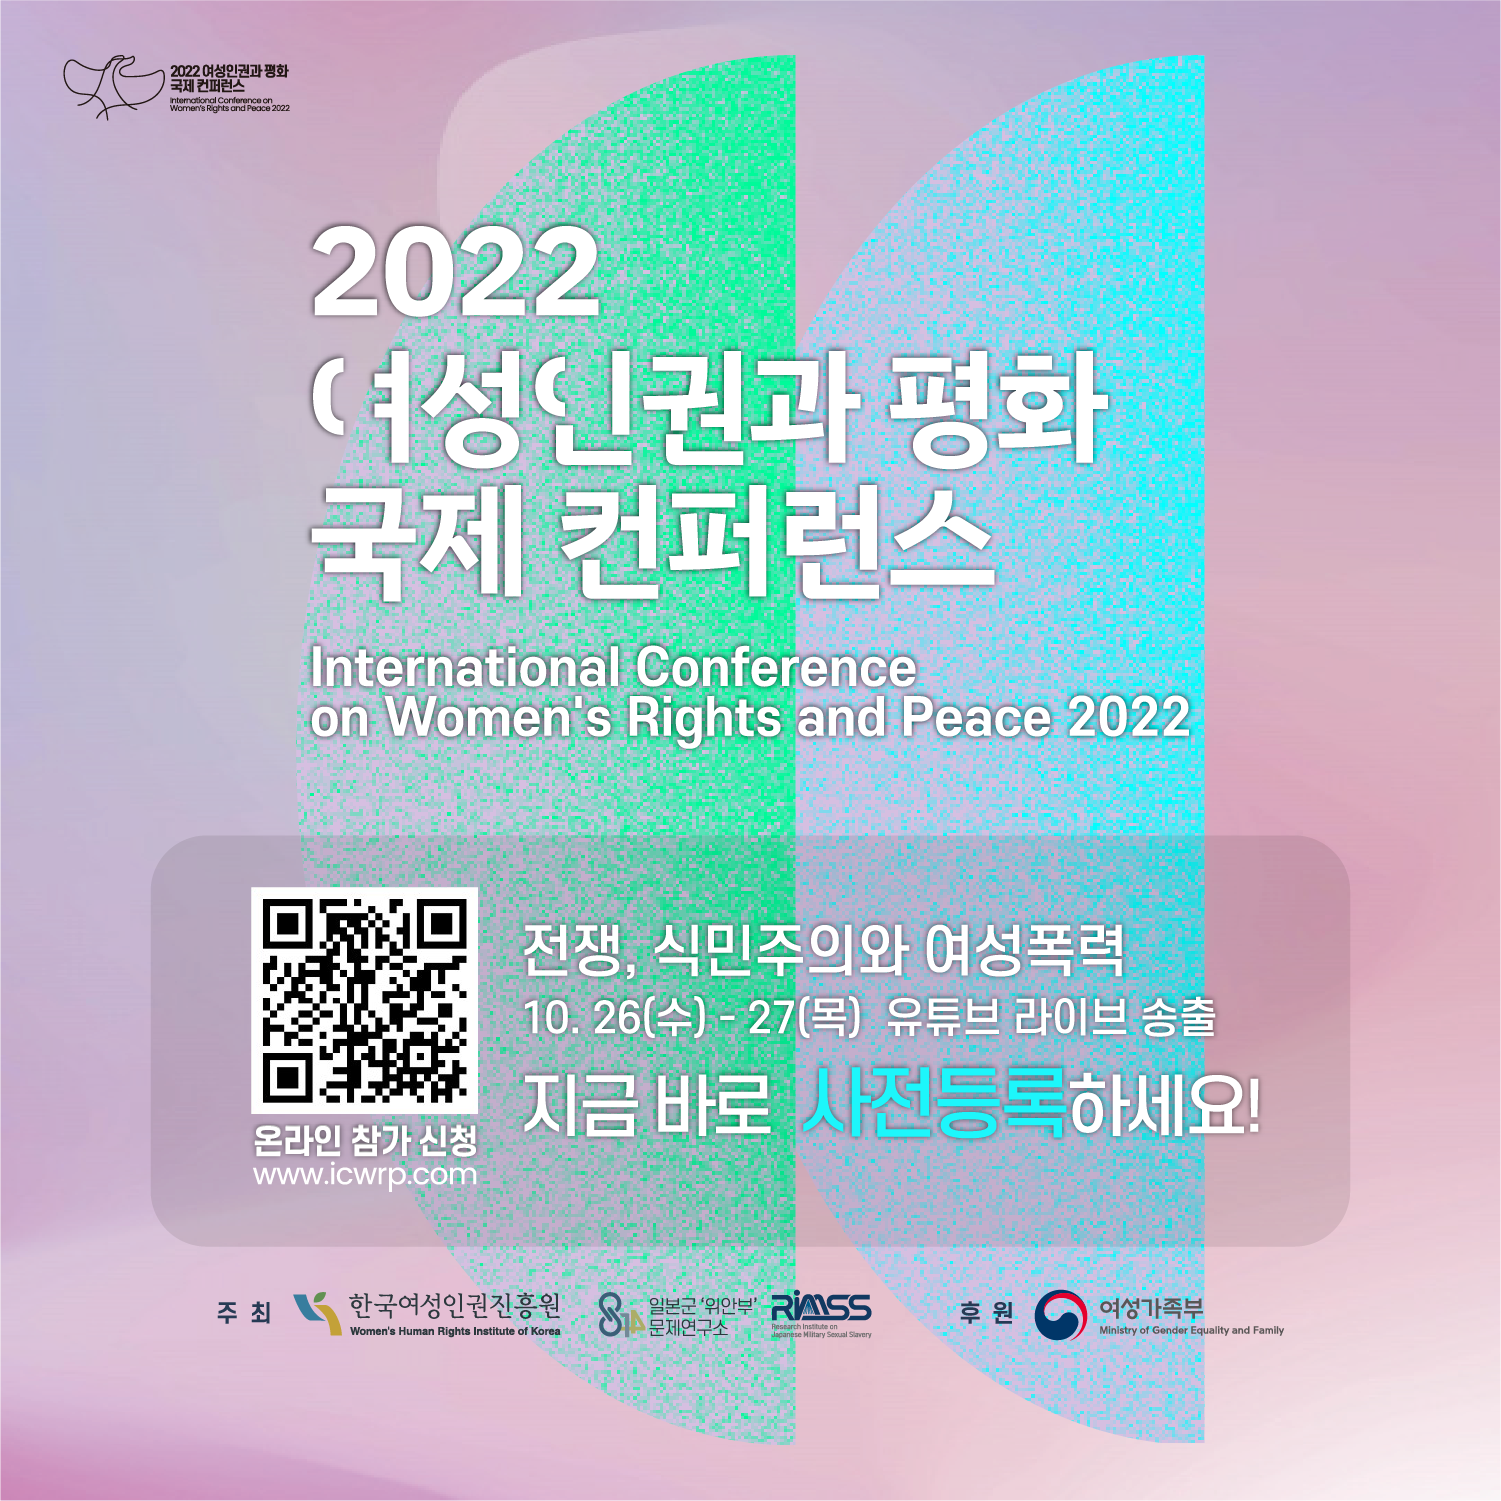 2022 여성인권과 평화 국제 컨퍼런스 International Conference on Womems Rights and Peace 2022 온라인 참가 신청 www.icwrp.com 전쟁 , 식민주의와 여성폭력 10.26(수)- 27(목) 유튜브 라이브 송출 지금 바로 사전등록 하세요! 주최 한국여성인권진흥원 일본군위안부 문제연구소 후원 여성가족부